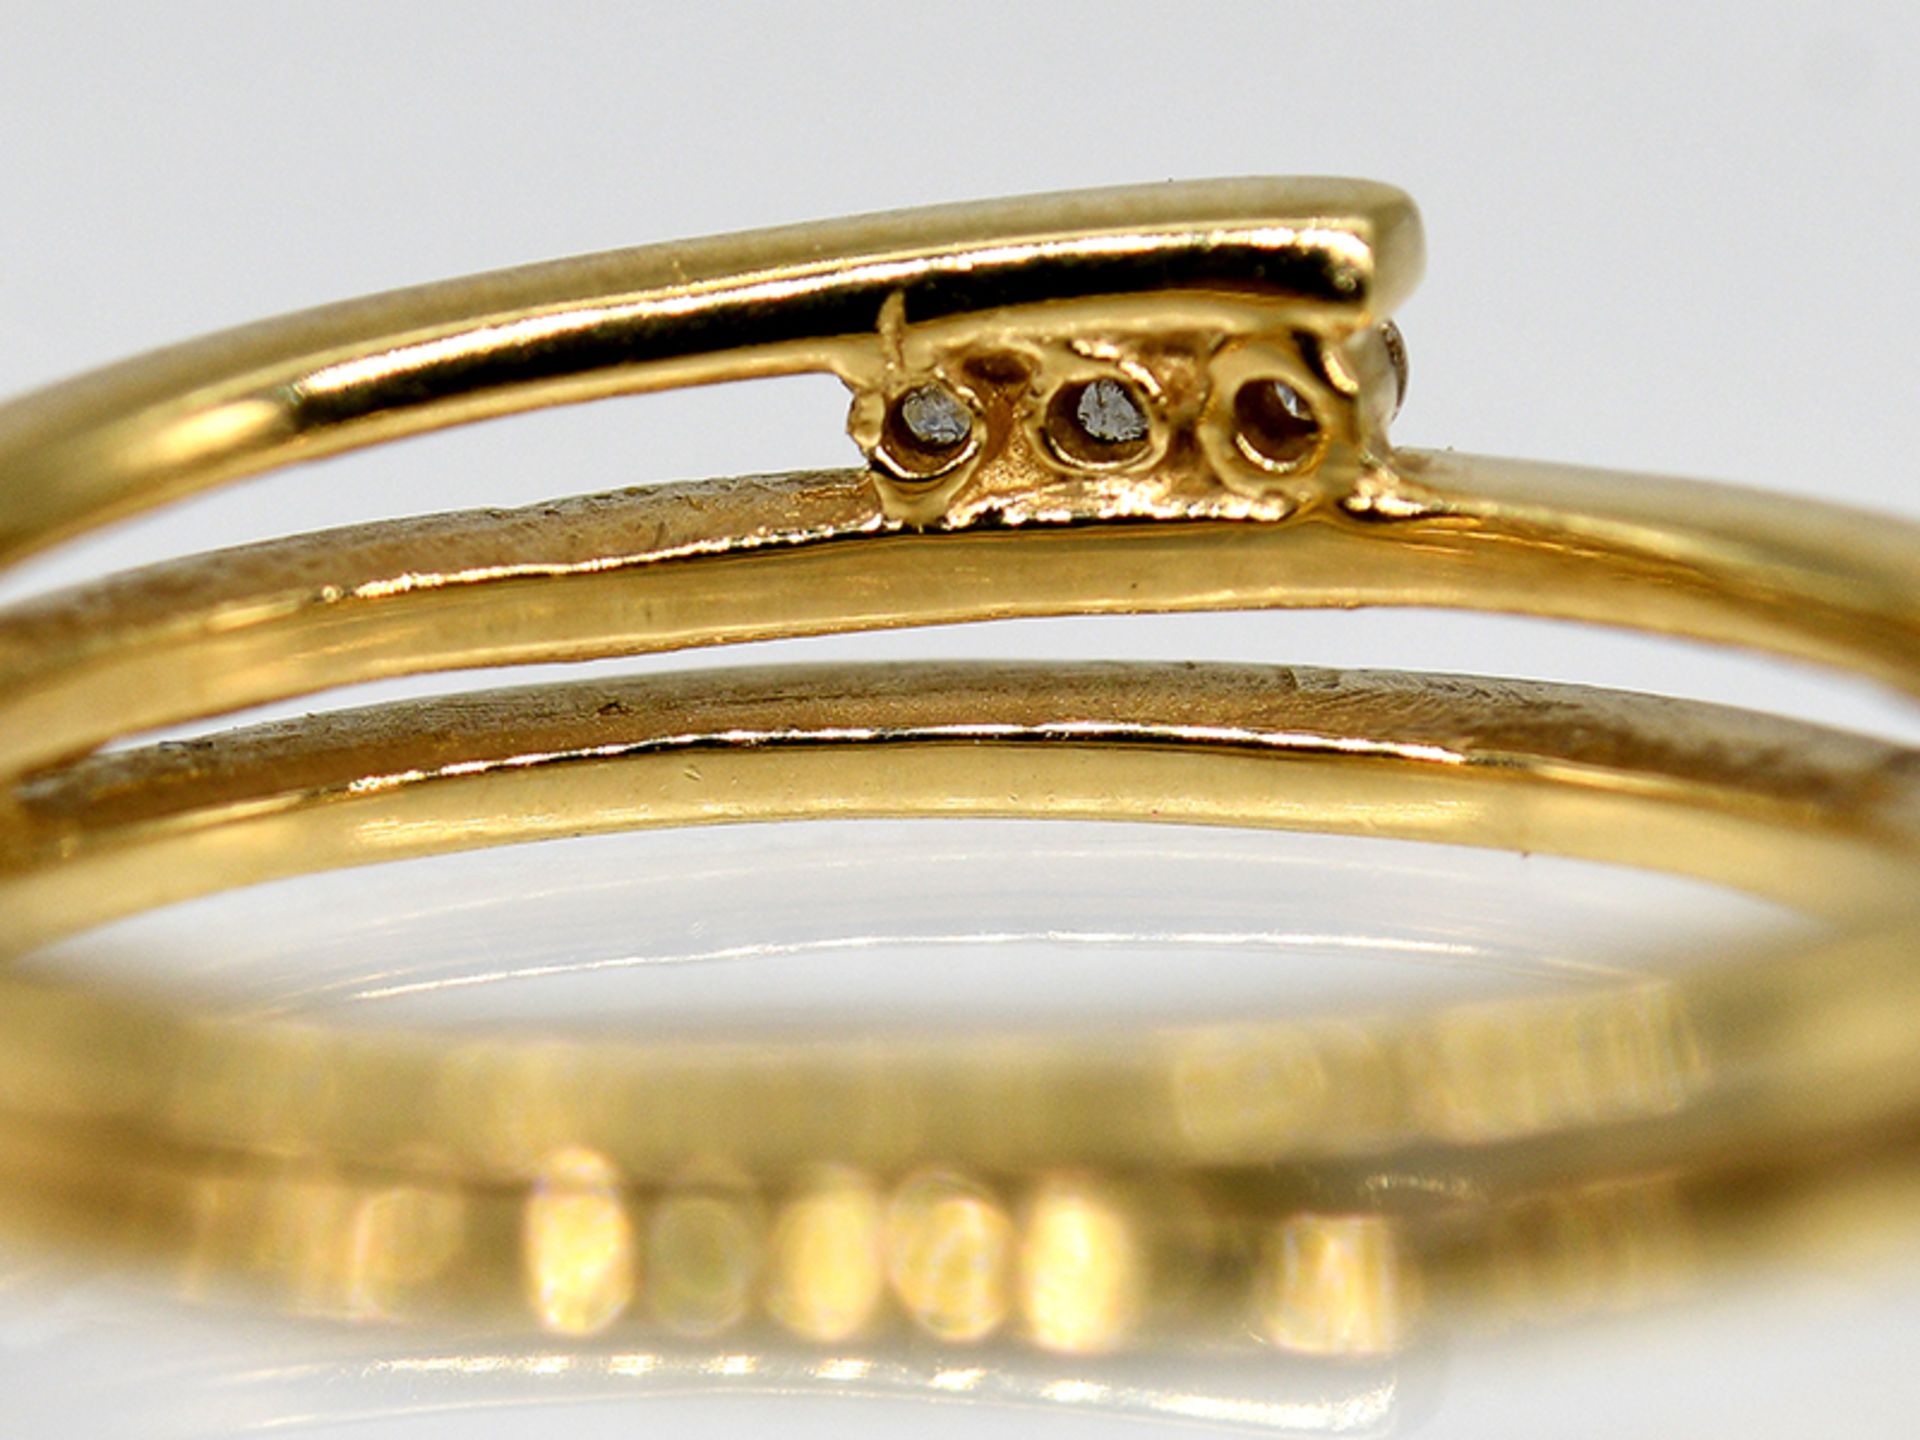 Ring mit 3 kleinen Brillanten, zus. ca. 0,06 ct, 90- er Jahre. - Image 3 of 4